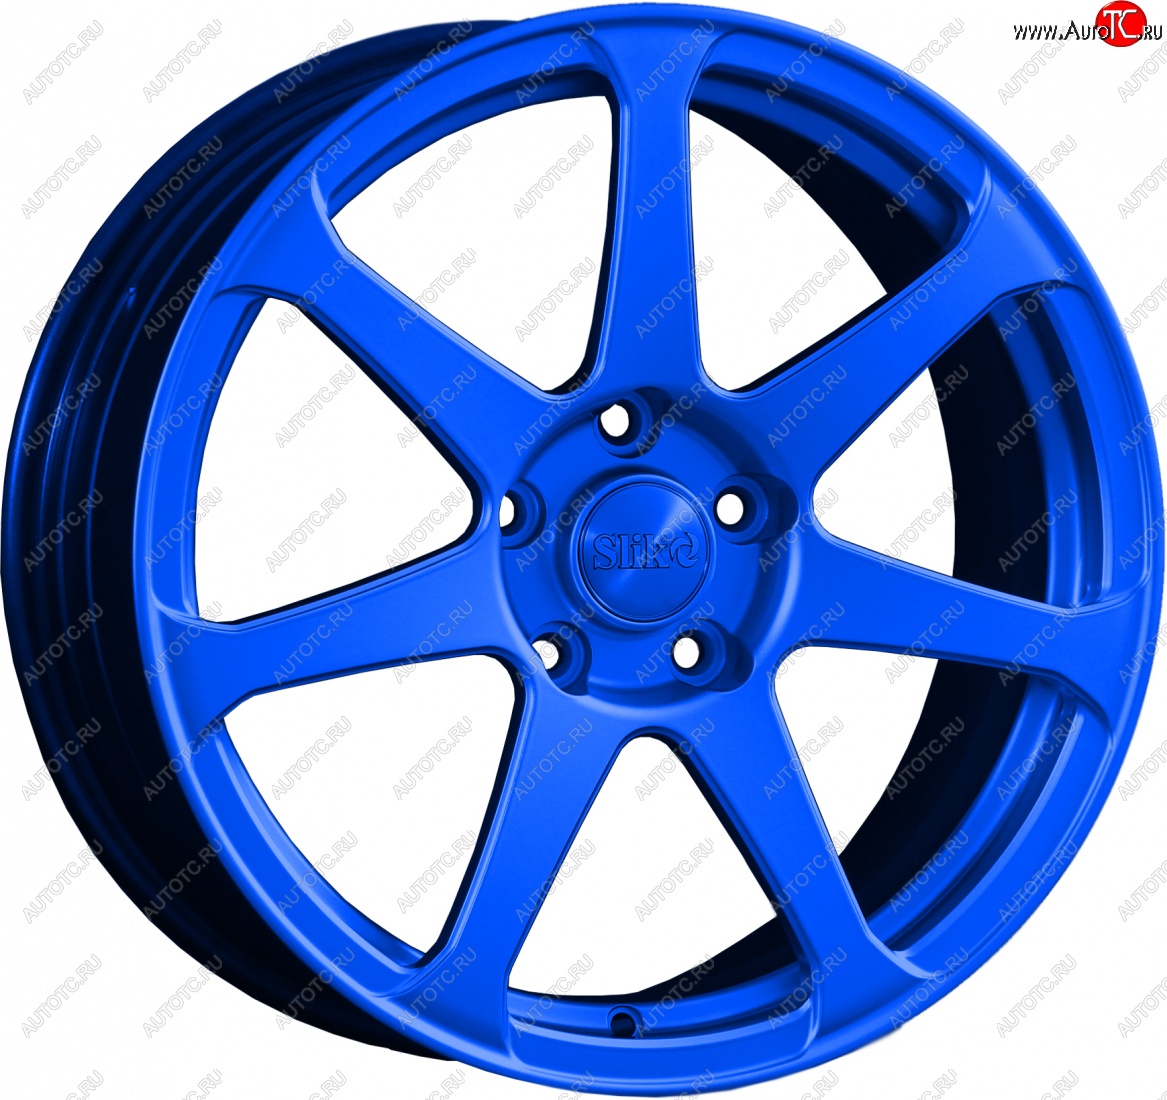 14 499 р. Кованый диск Slik classik R17x7.5 Candy BLUE синий 7.5x17 Toyota Allion T260 седан дорестайлинг (2007-2010) 5x100.0xDIA54.1xET45.0 (Цвет: Candy BLUE синий 7.5x17)